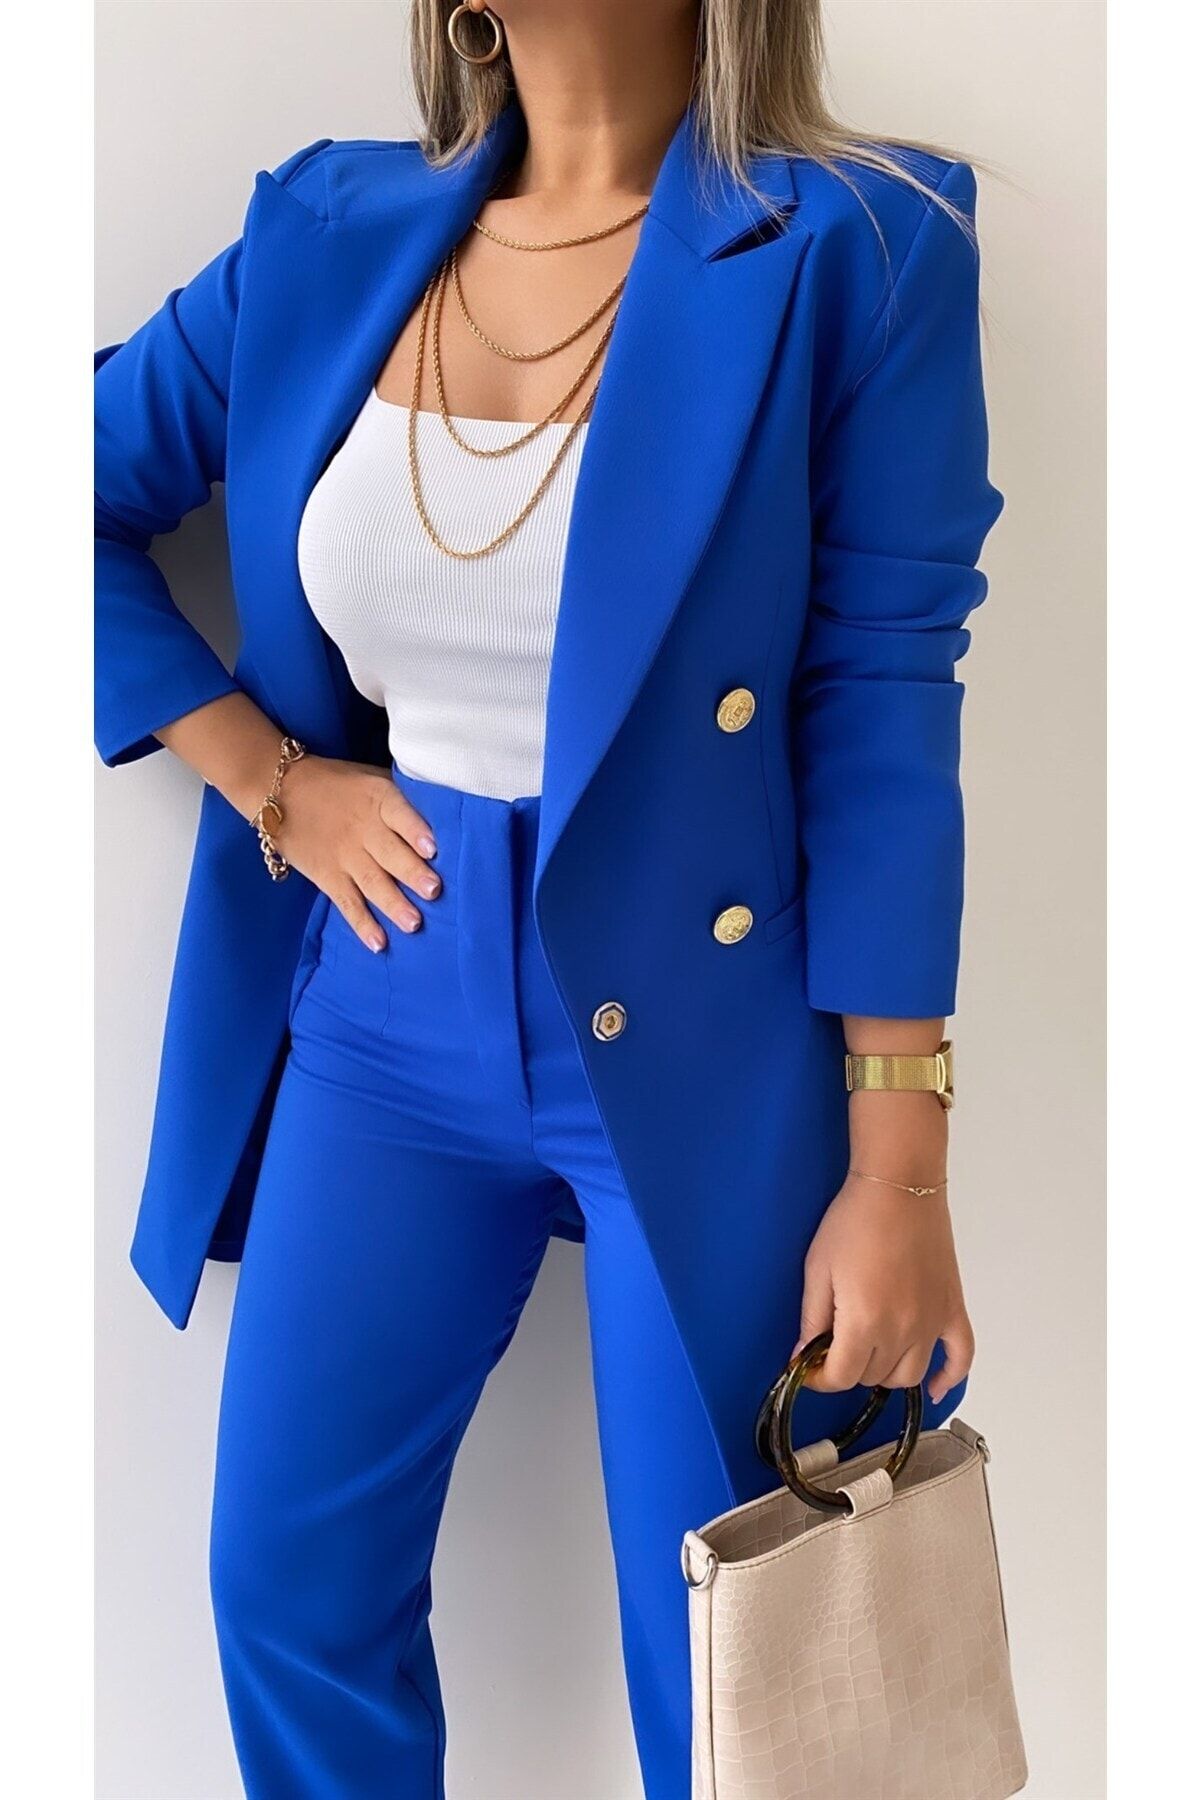 SEDA FİDAN Kadın Saks Mavi Uzun Gold Düğmeli Blazer Ceket Koyu